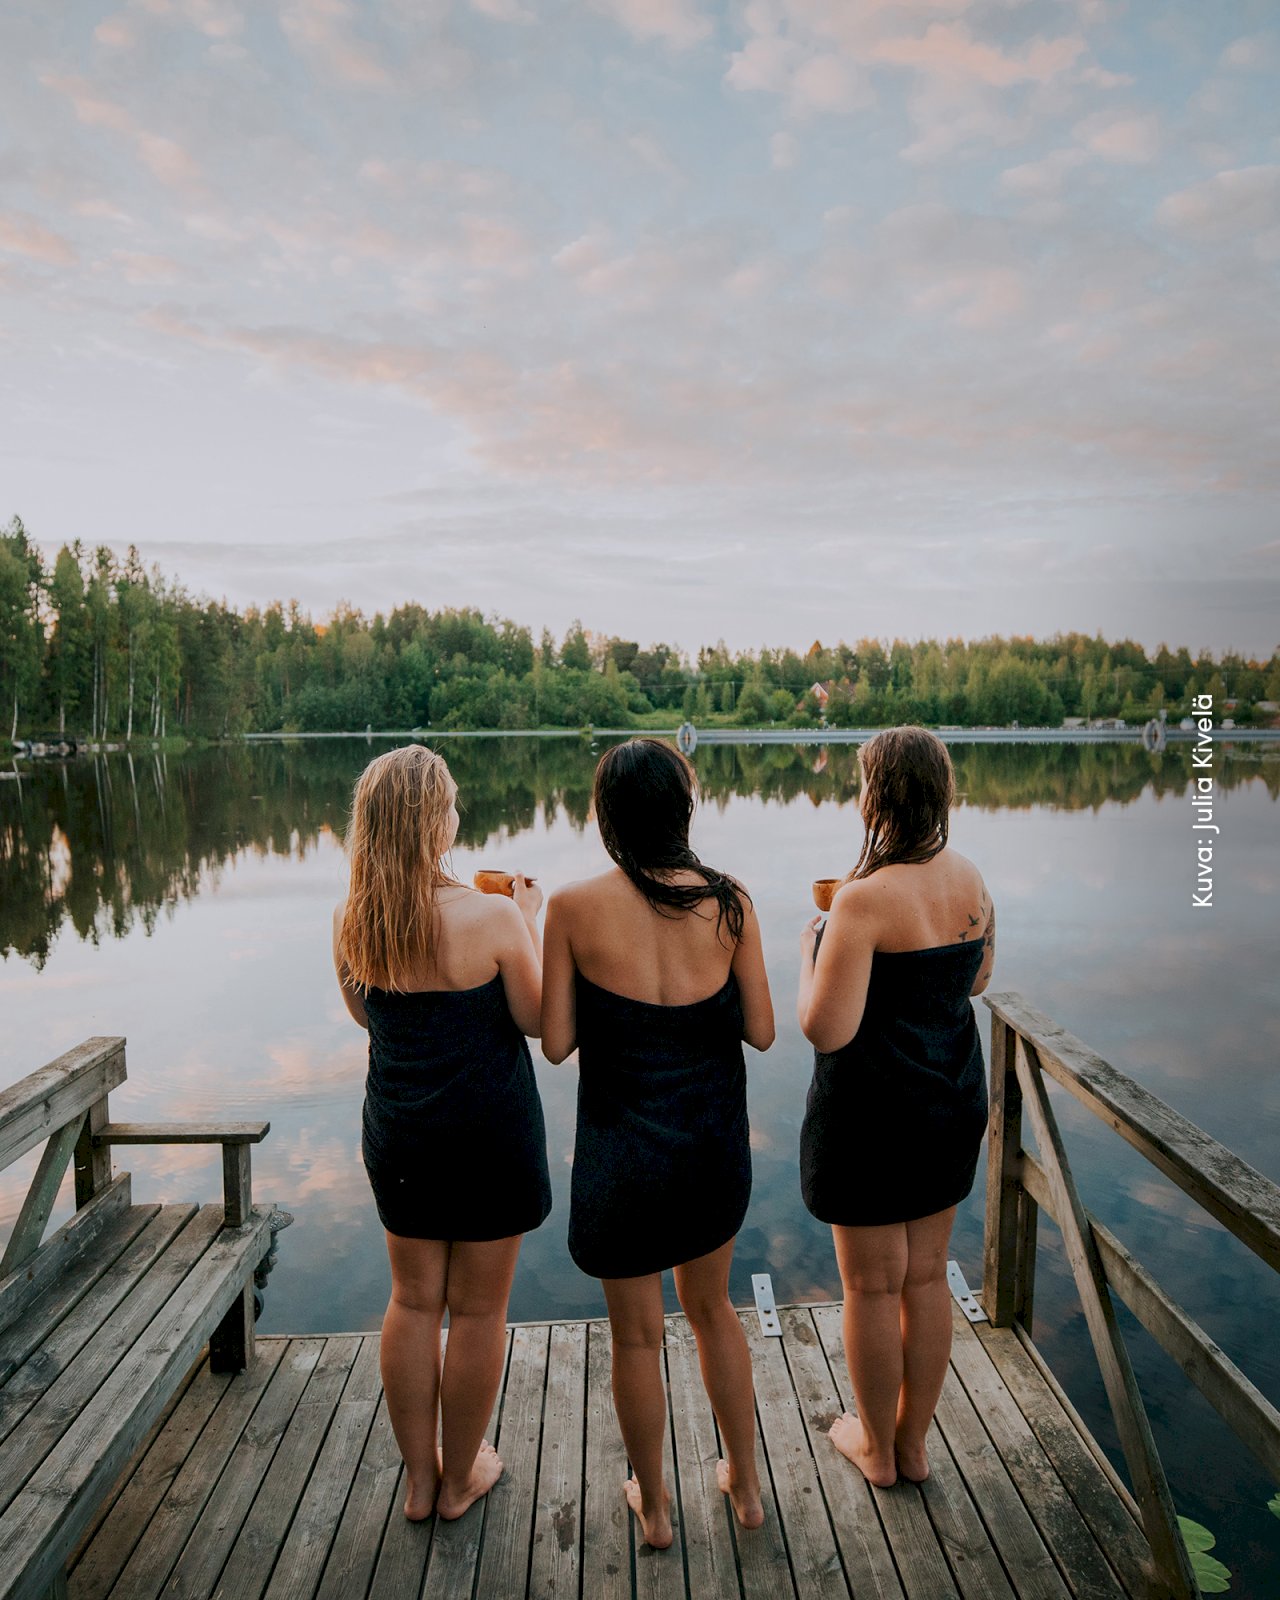 Kolme naista seisovat pyyhkeet päällä Varjolan laiturilla katsellen järvimaisemaa auringonlaskussa.